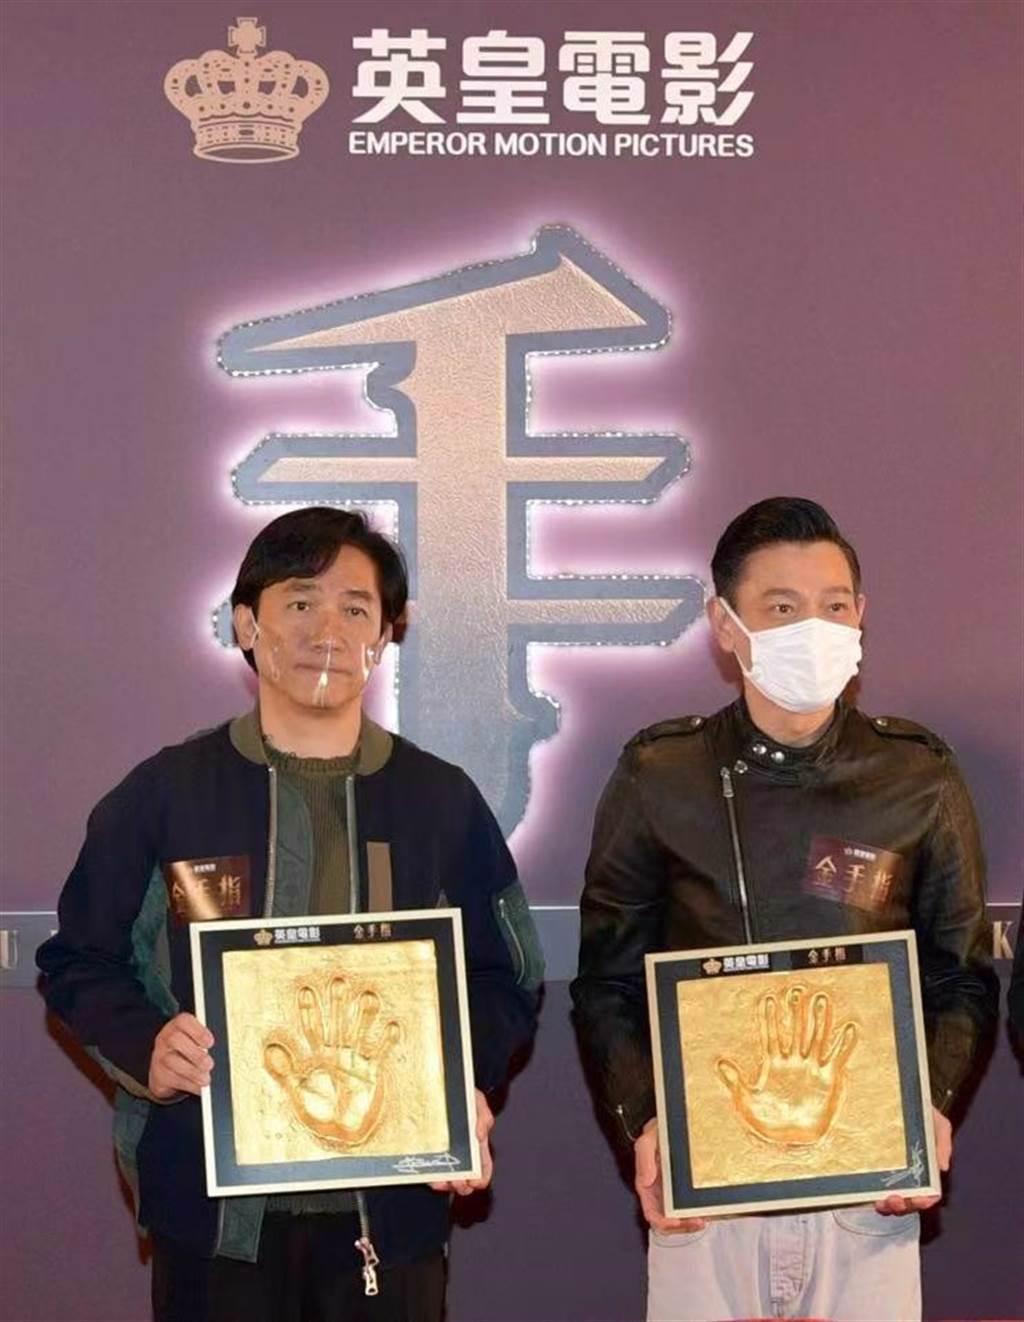 劉德華與梁朝偉睽違18年，終於合作演出《金手指》。(翻攝自英皇電影Emperor Motion Pictures官方臉書)